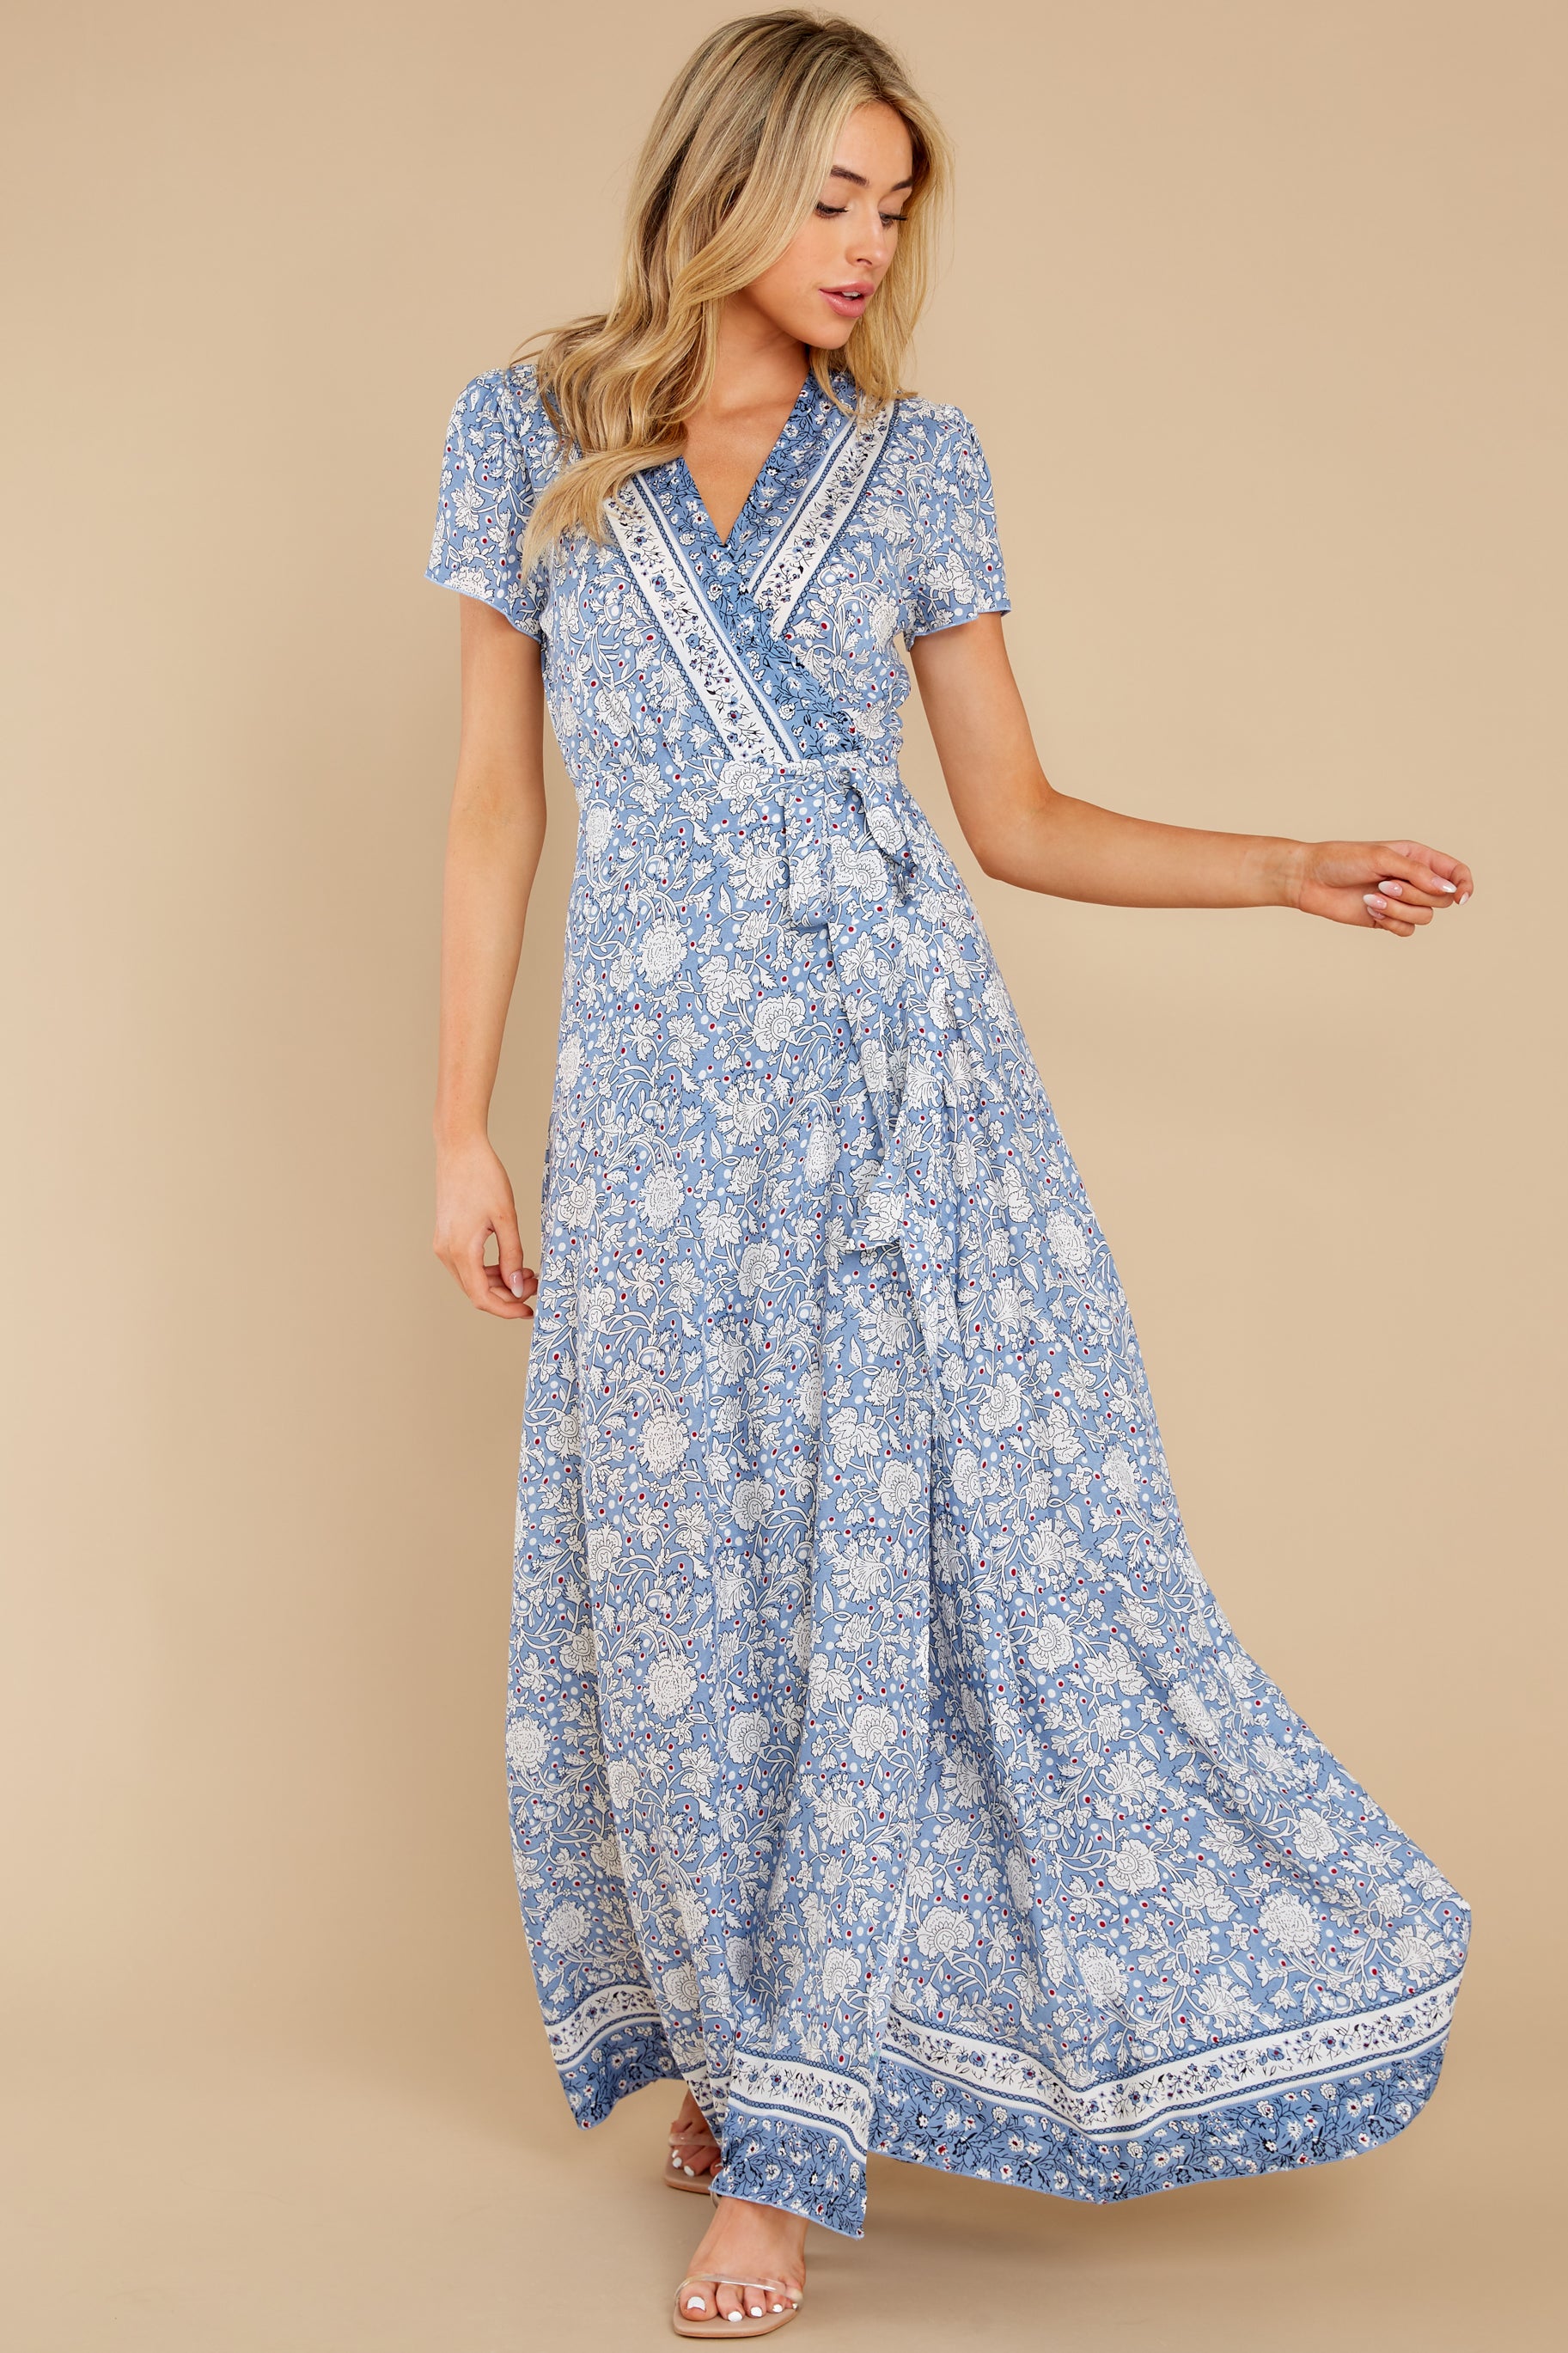 Sweet Blue Dress - Floral Print True Wrap Maxi Dress - Dress - $48.00 ...